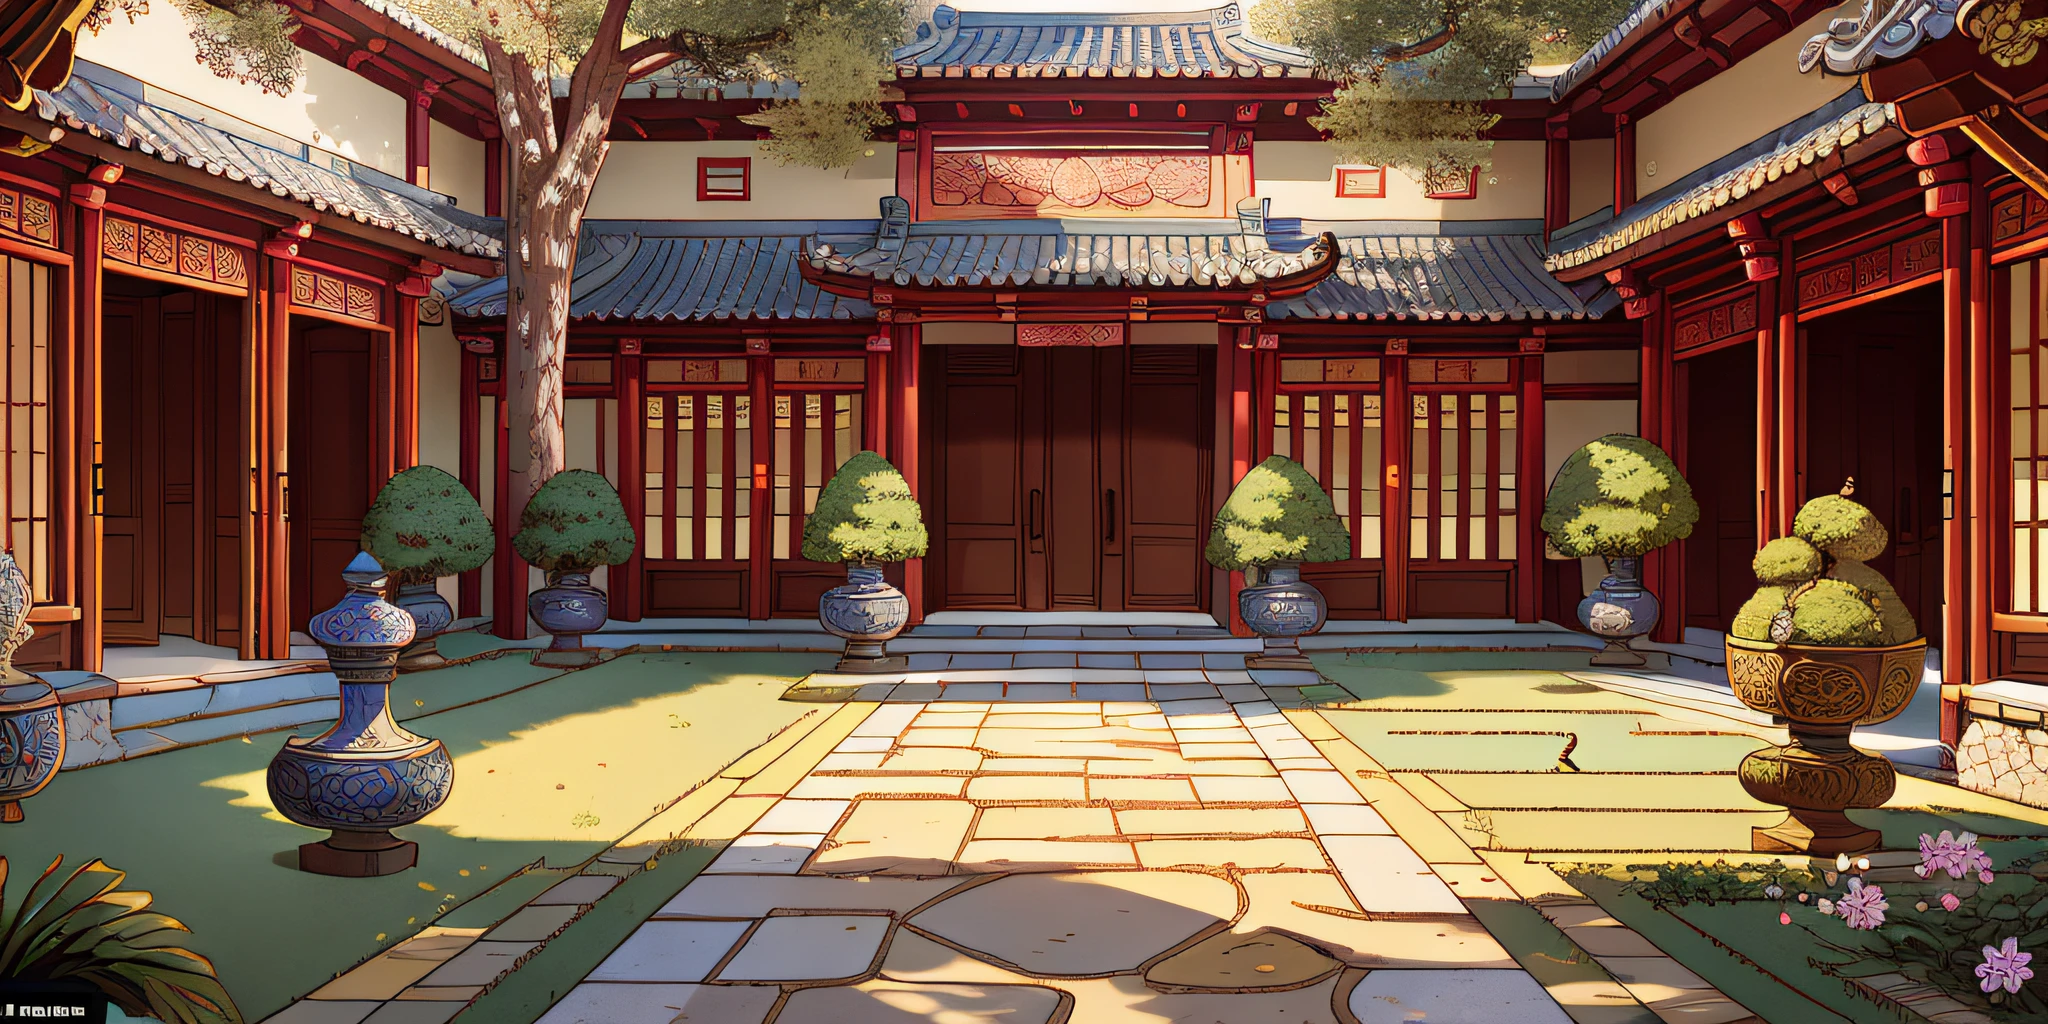 걸작, 최고의 품질, 고품질, 매우 상세한, 고대 중국 안뜰은 일반적으로 안뜰로 구성됩니다, 네 개의 낮은 벽으로 둘러싸인, 안뜰 건물 배치가 합리적입니다, 현관으로 나누어져 있어요, 객실, 정원 그늘 및 기타 지역. 마당 바닥은 대부분 청석판이나 돌로 포장되어 있다.